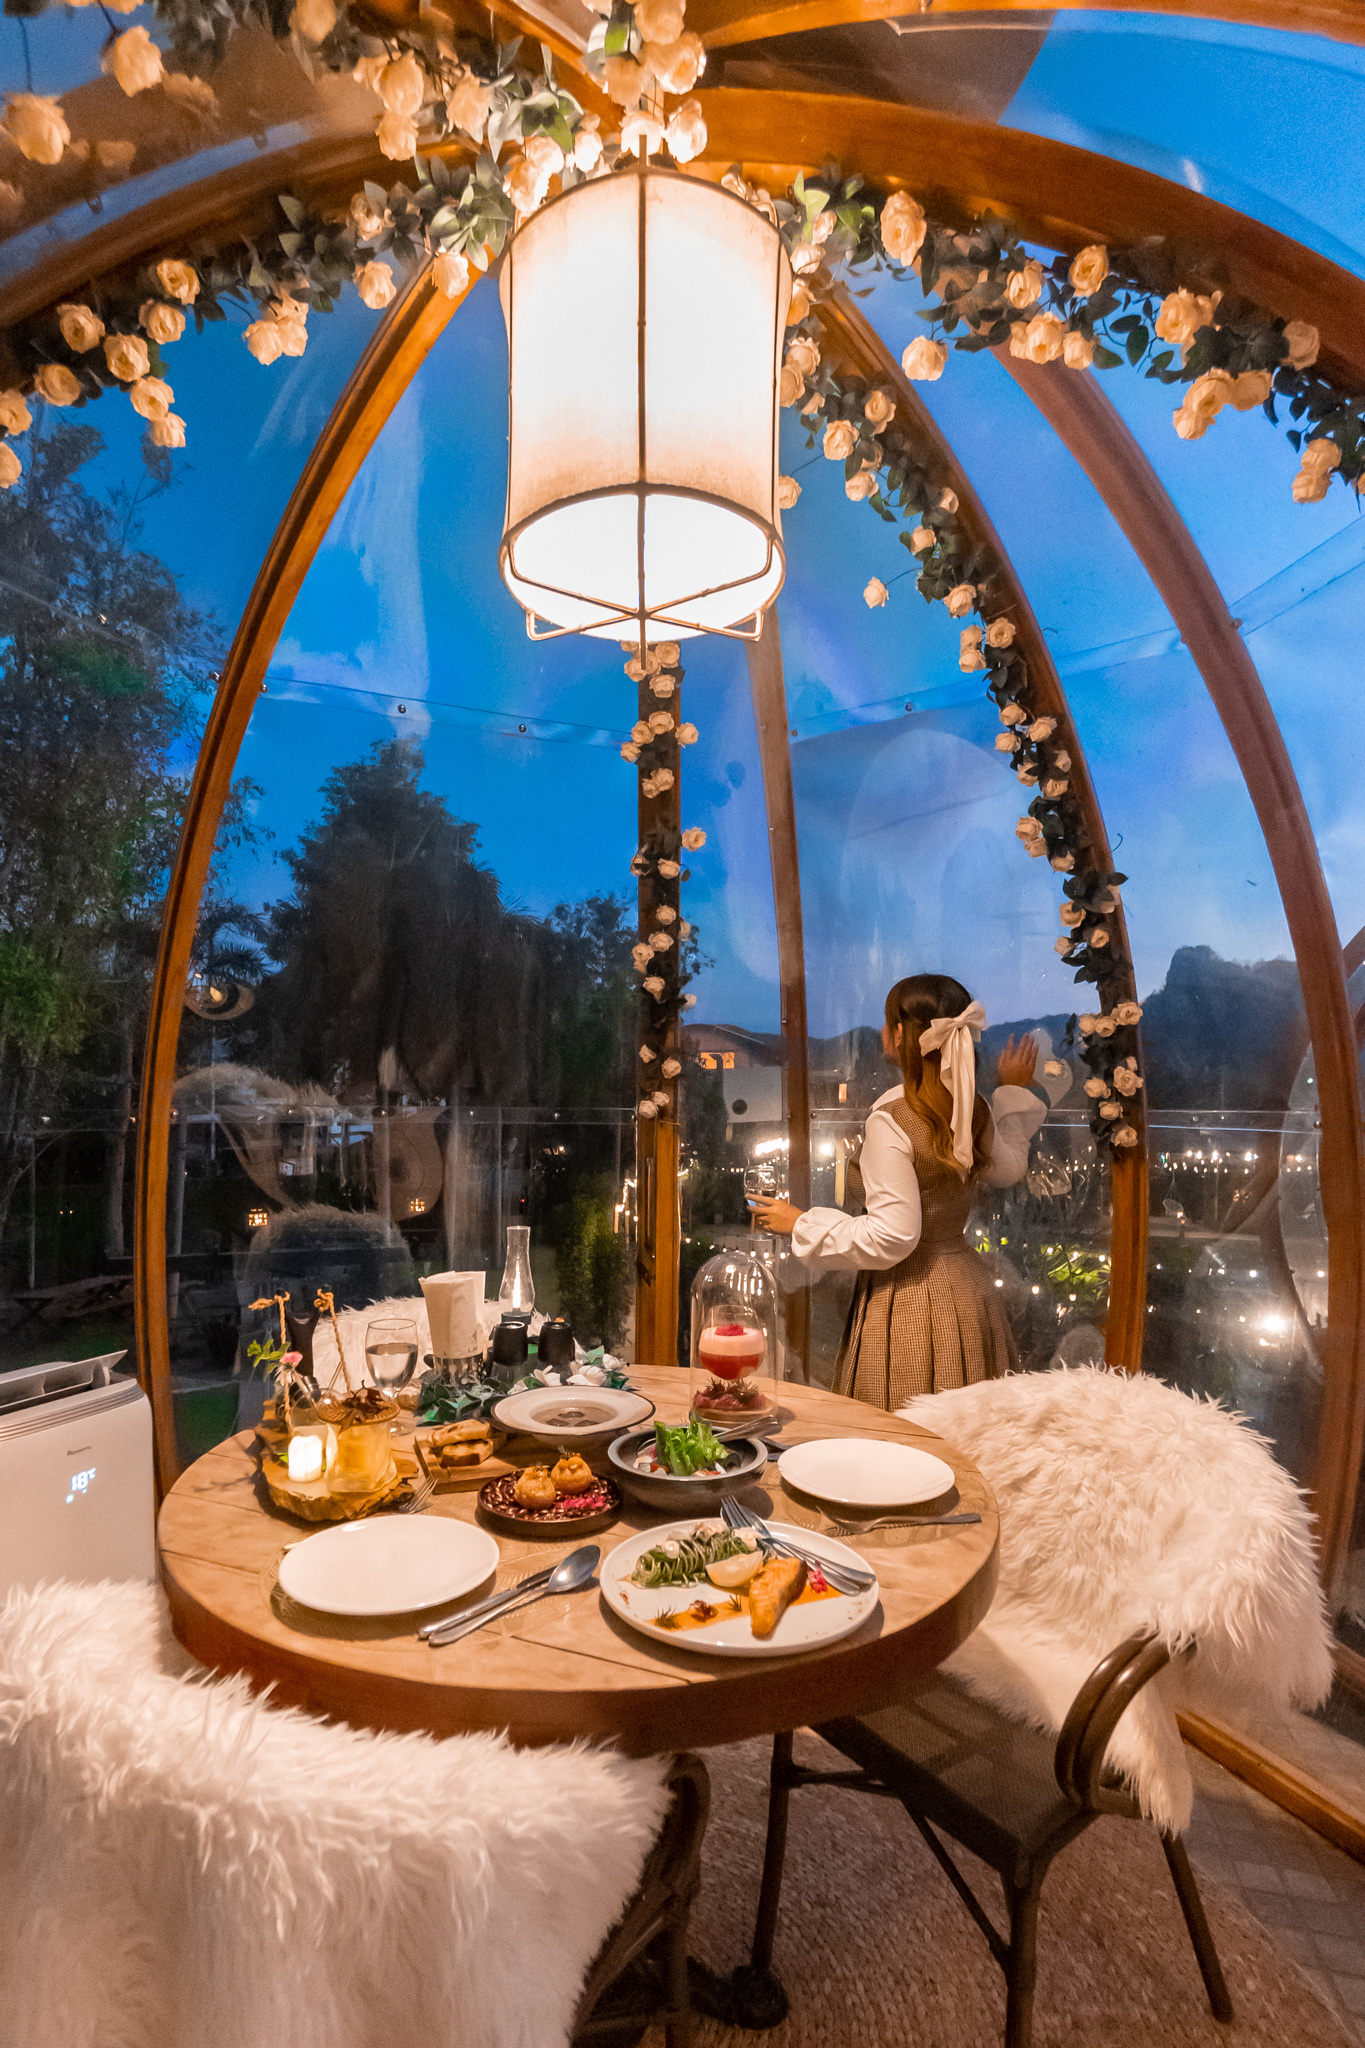 泰国考艾穹顶餐厅